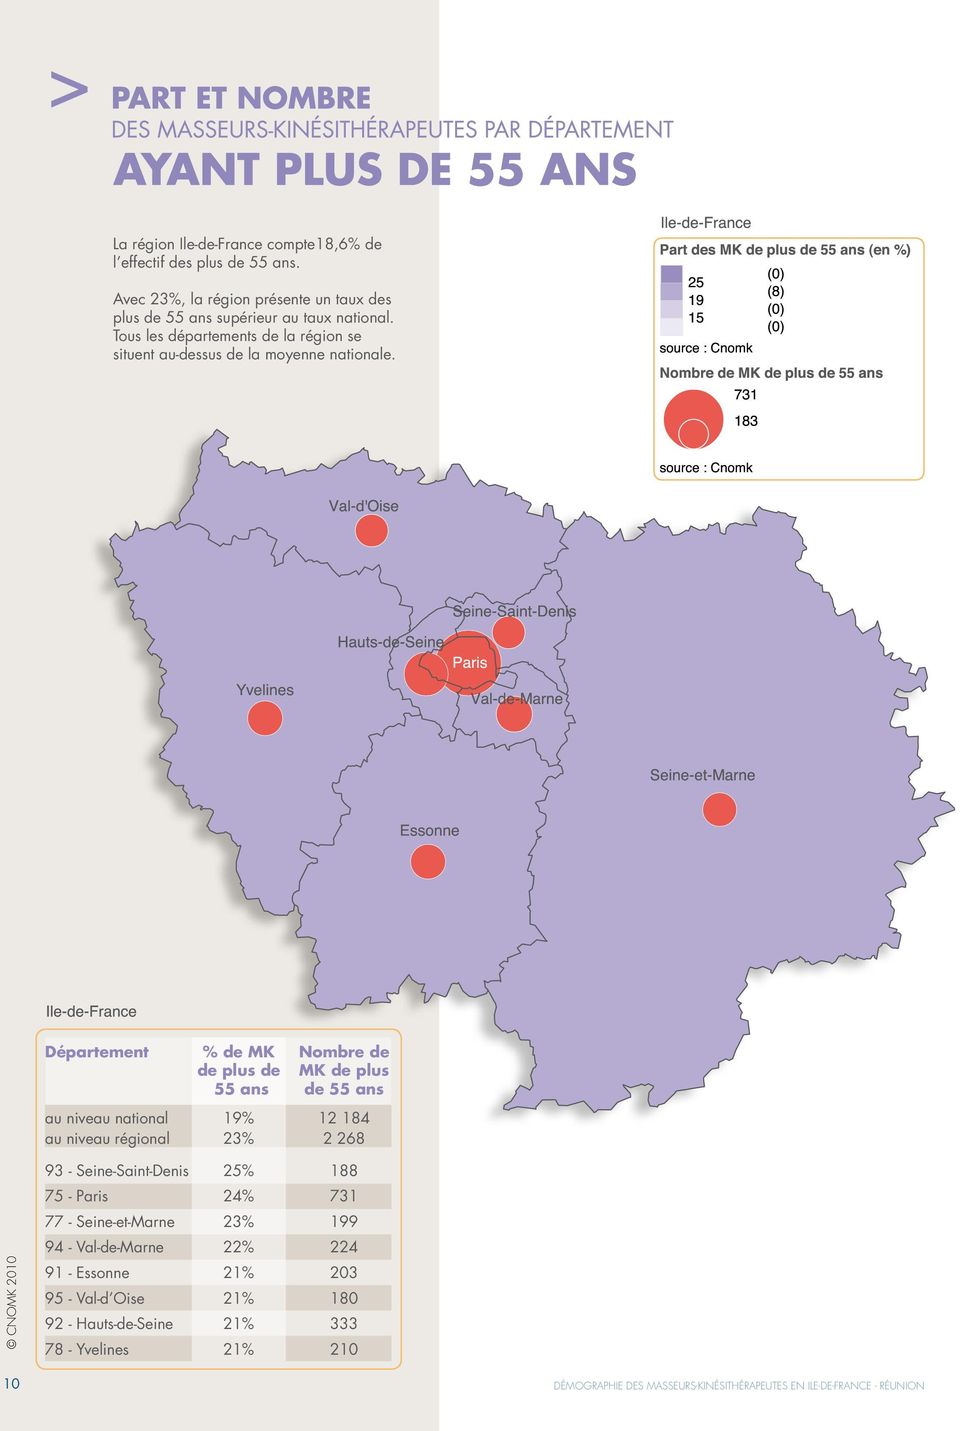 Département % de MK Nombre de de plus de MK de plus 55 ans de 55 ans au niveau national 19% 12 184 au niveau régional 23% 2 268 93 - Seine-Saint-Denis 25% 188